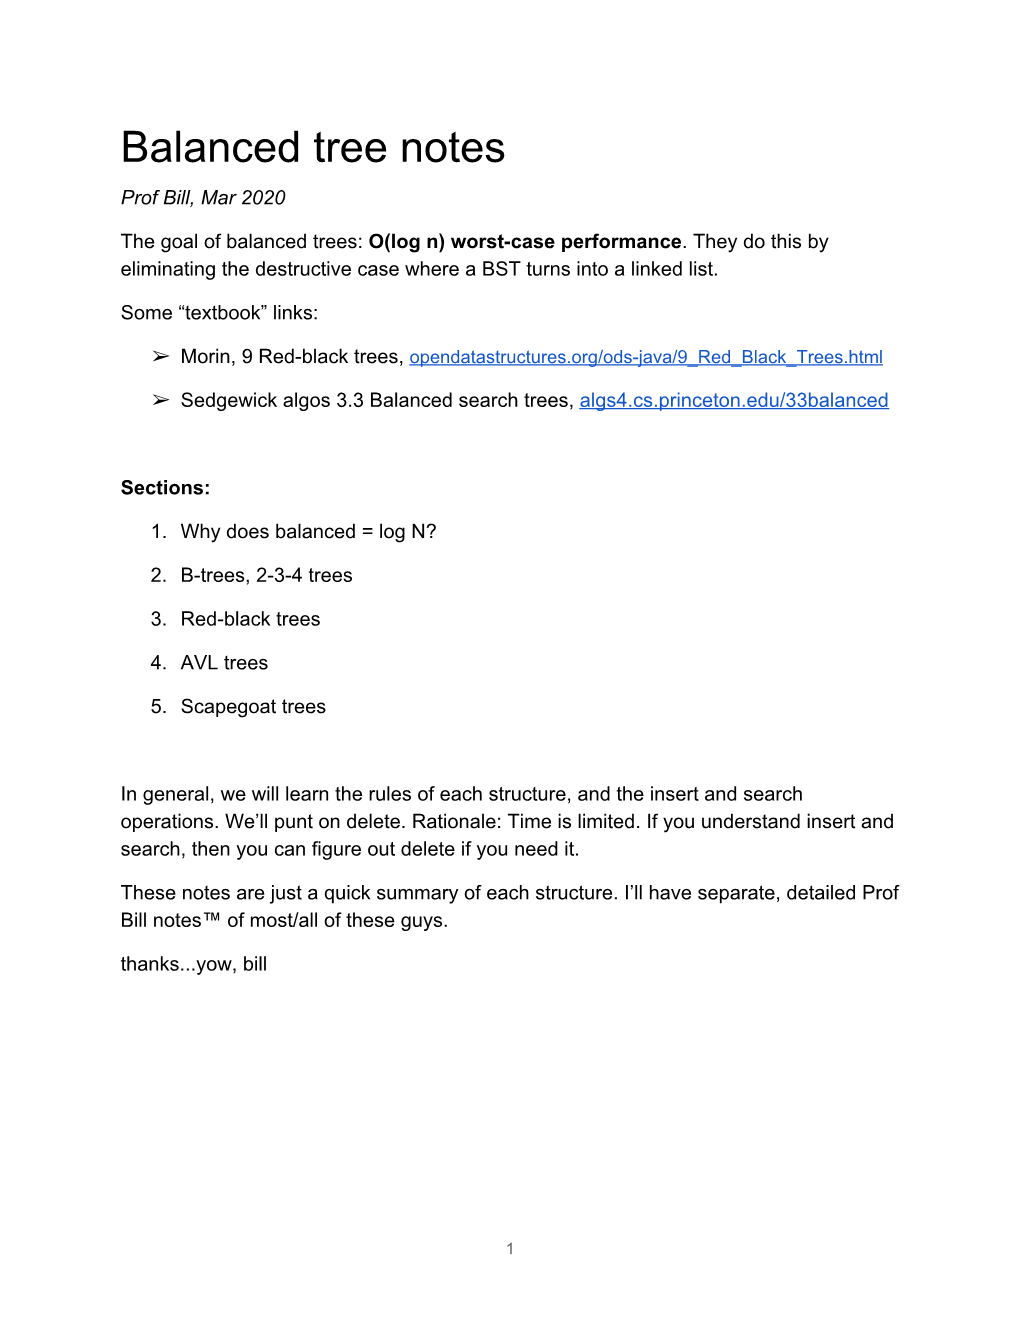 Balanced Tree Notes Prof Bill, Mar 2020